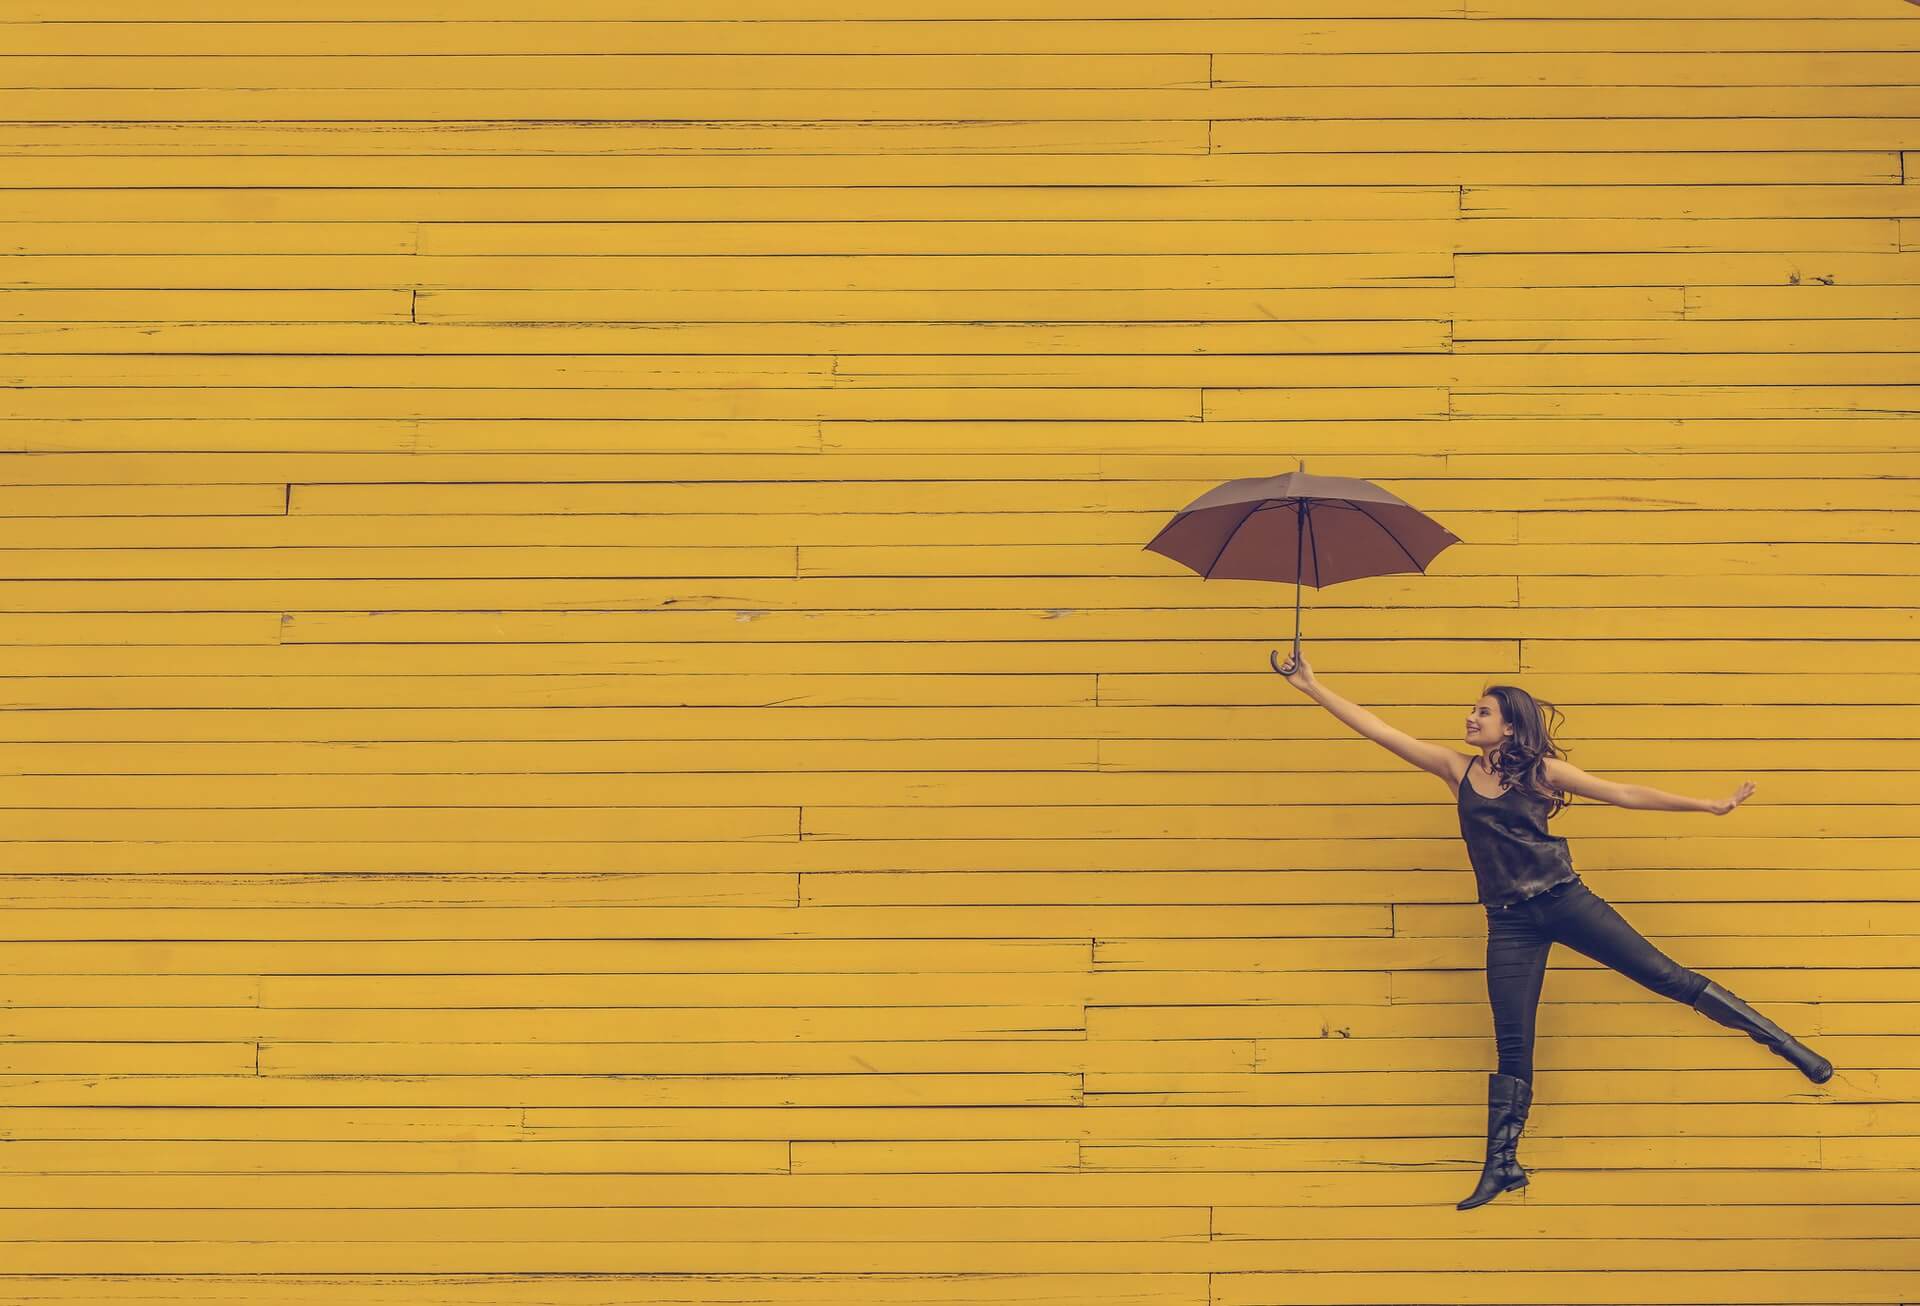 Żółta ściana. Na jej tle wesoła kobieta skacze z parasolką